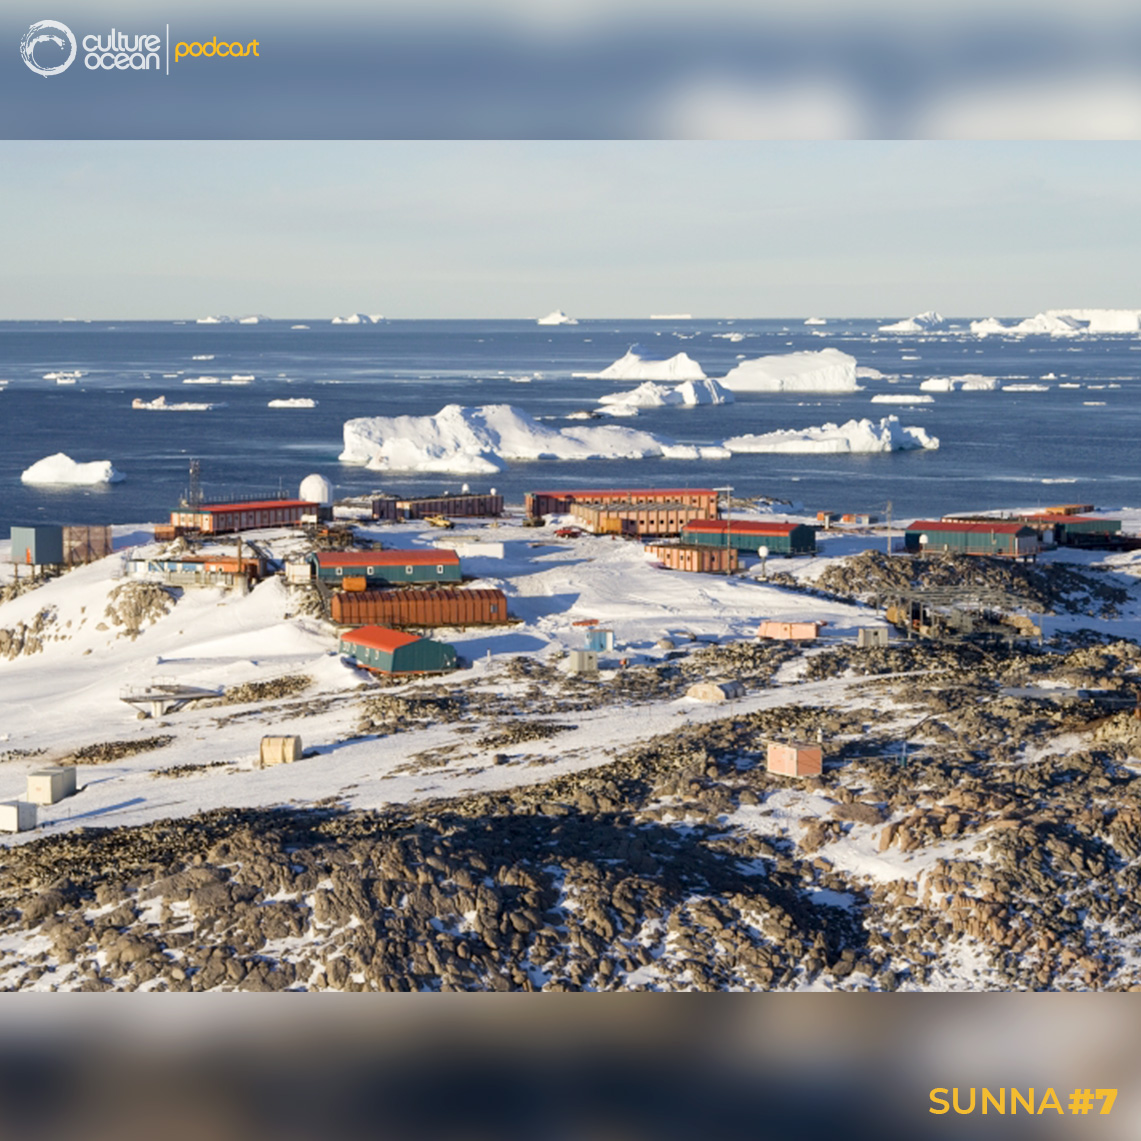 Sunna #7 - La base antarctique Dumont-d'Urville est une base scientifique antarctique française. Elle peut accueillir jusqu’à 40 personnes en hiver. Photo : Base Dumont d’Urville. ©S.Blanc / www.sblanc.com.